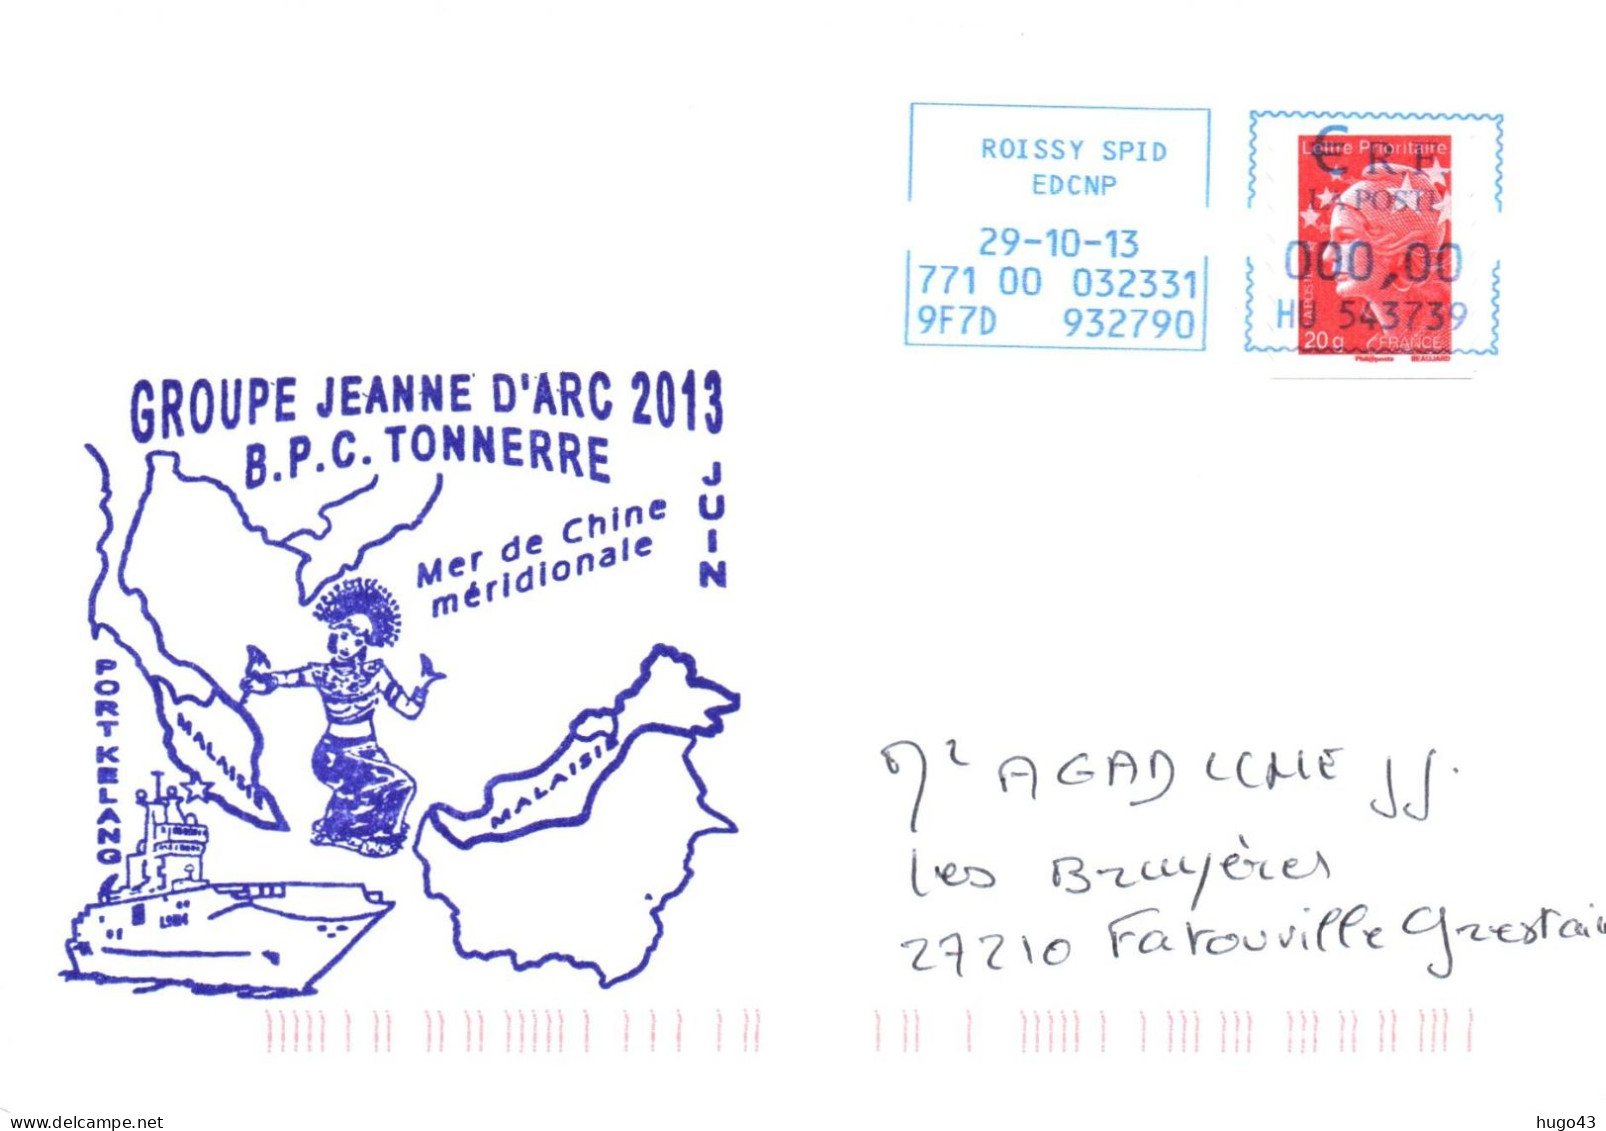 ENVELOPPE AVEC CACHET B.P.C. TONNERRE - GROUPE JEANNE D' ARC 2013 - MER DE CHINE MERIDIONALE LE 29/10/13 - Naval Post